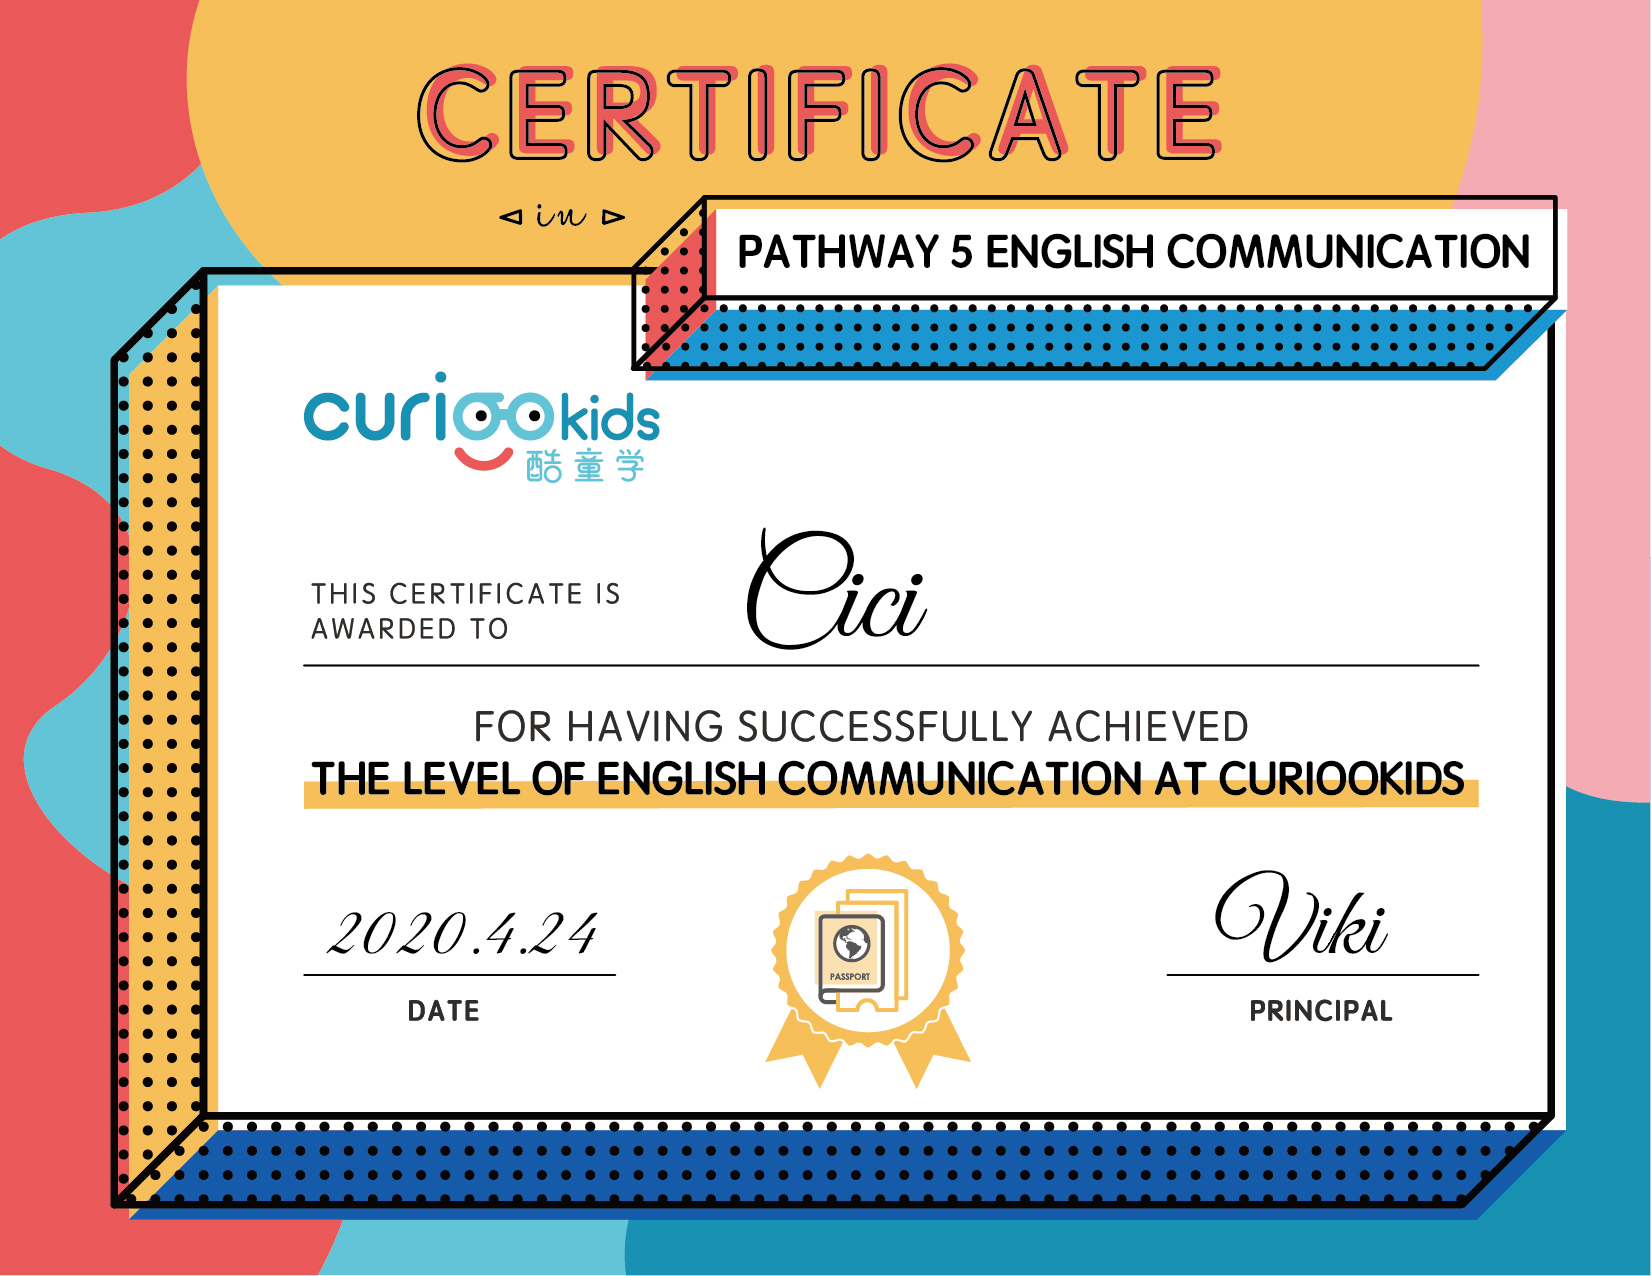 Pathway 5-ENGLISH-COMMUNICATION